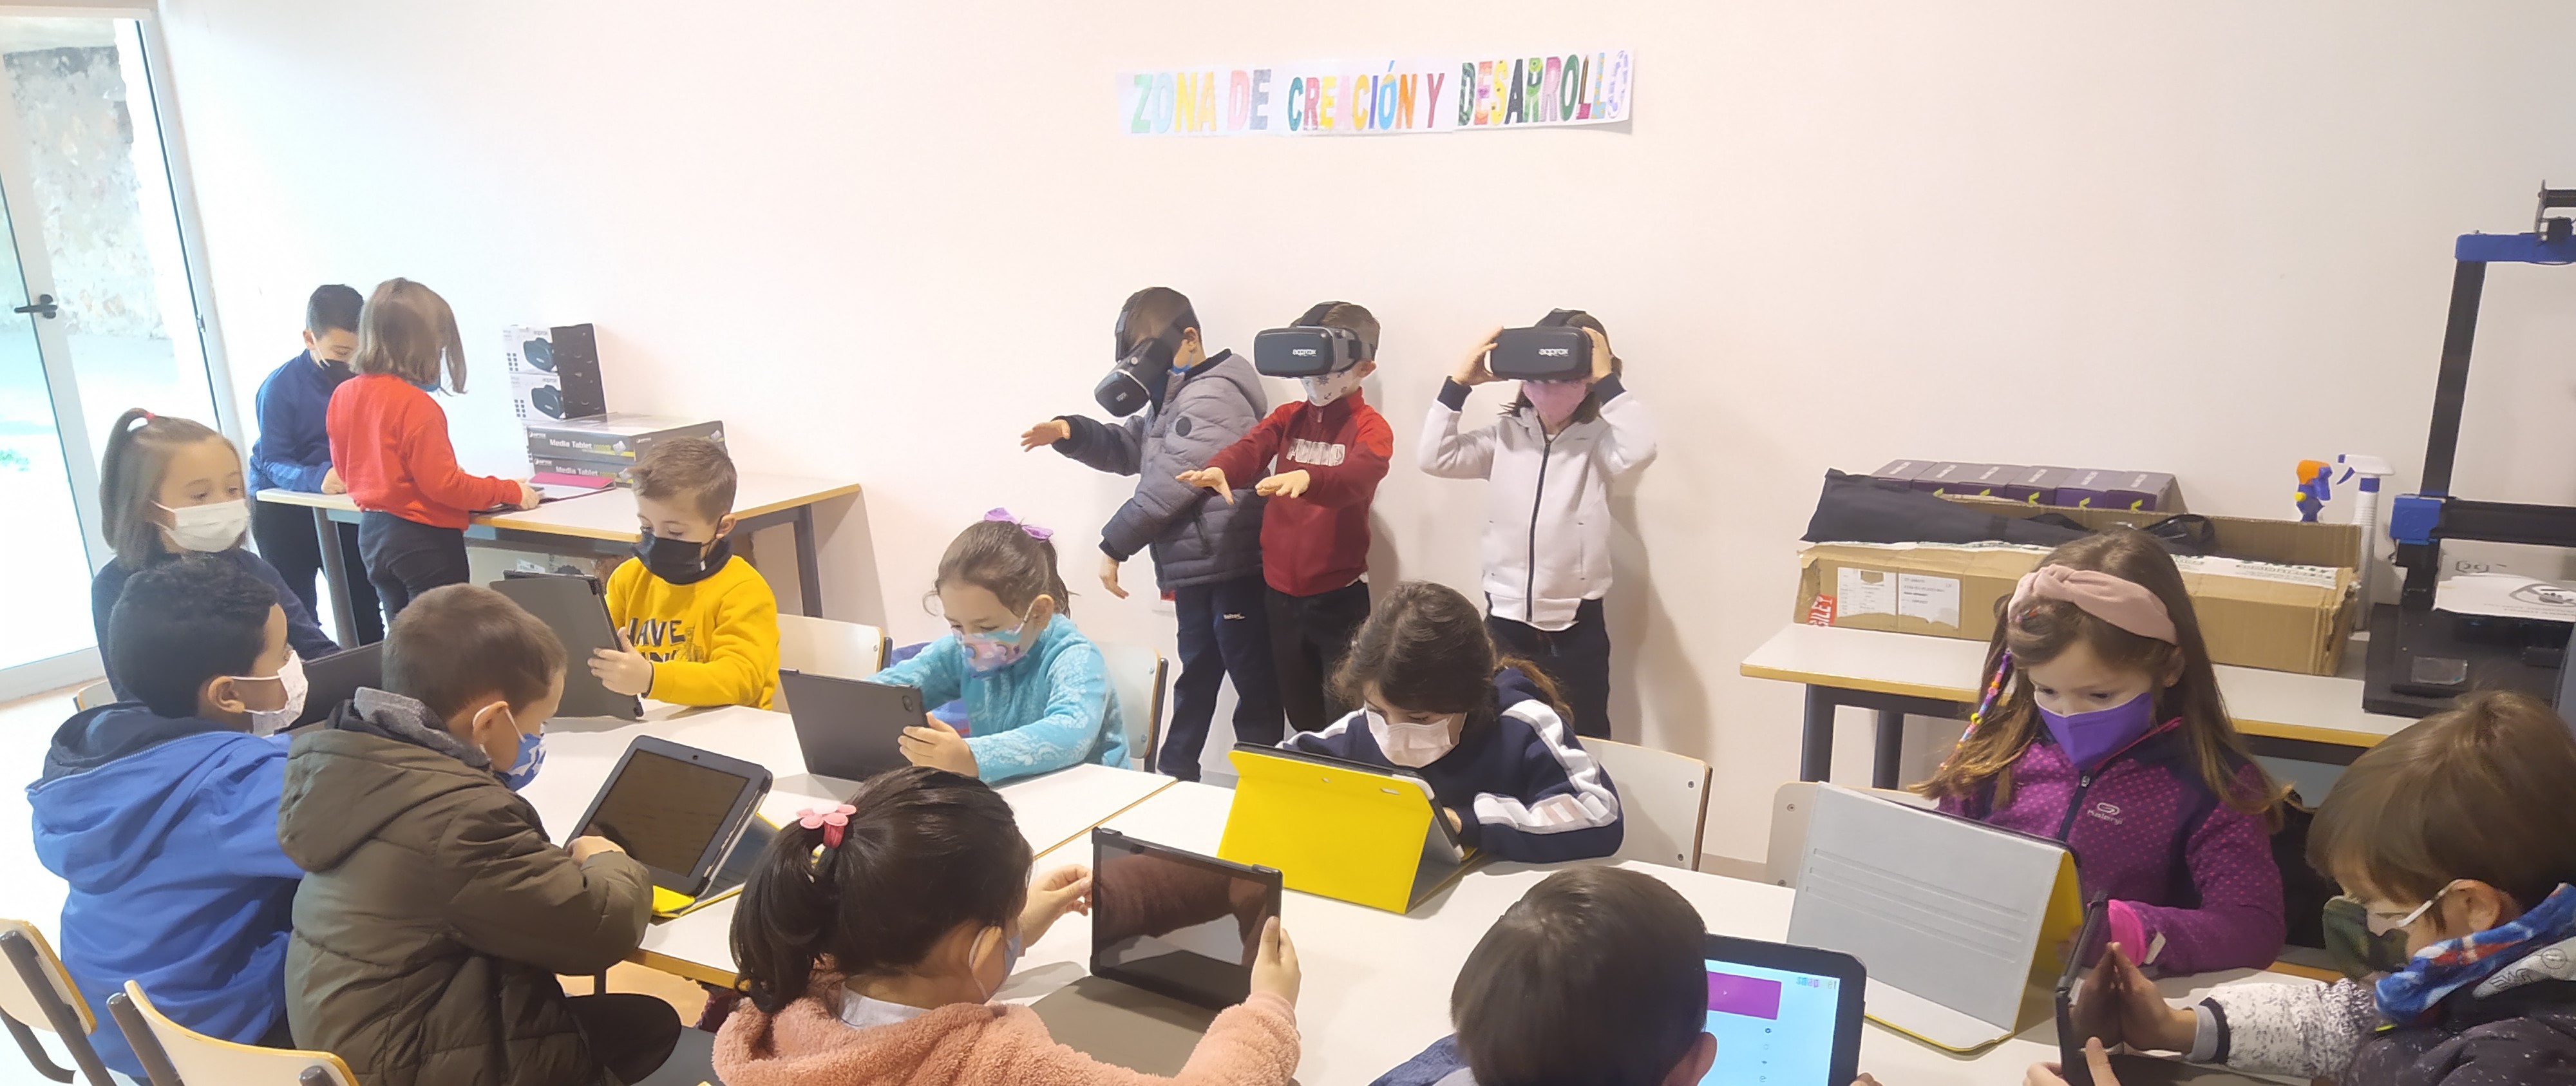 Estudiantes con tablets y con gafas de realidad virtual